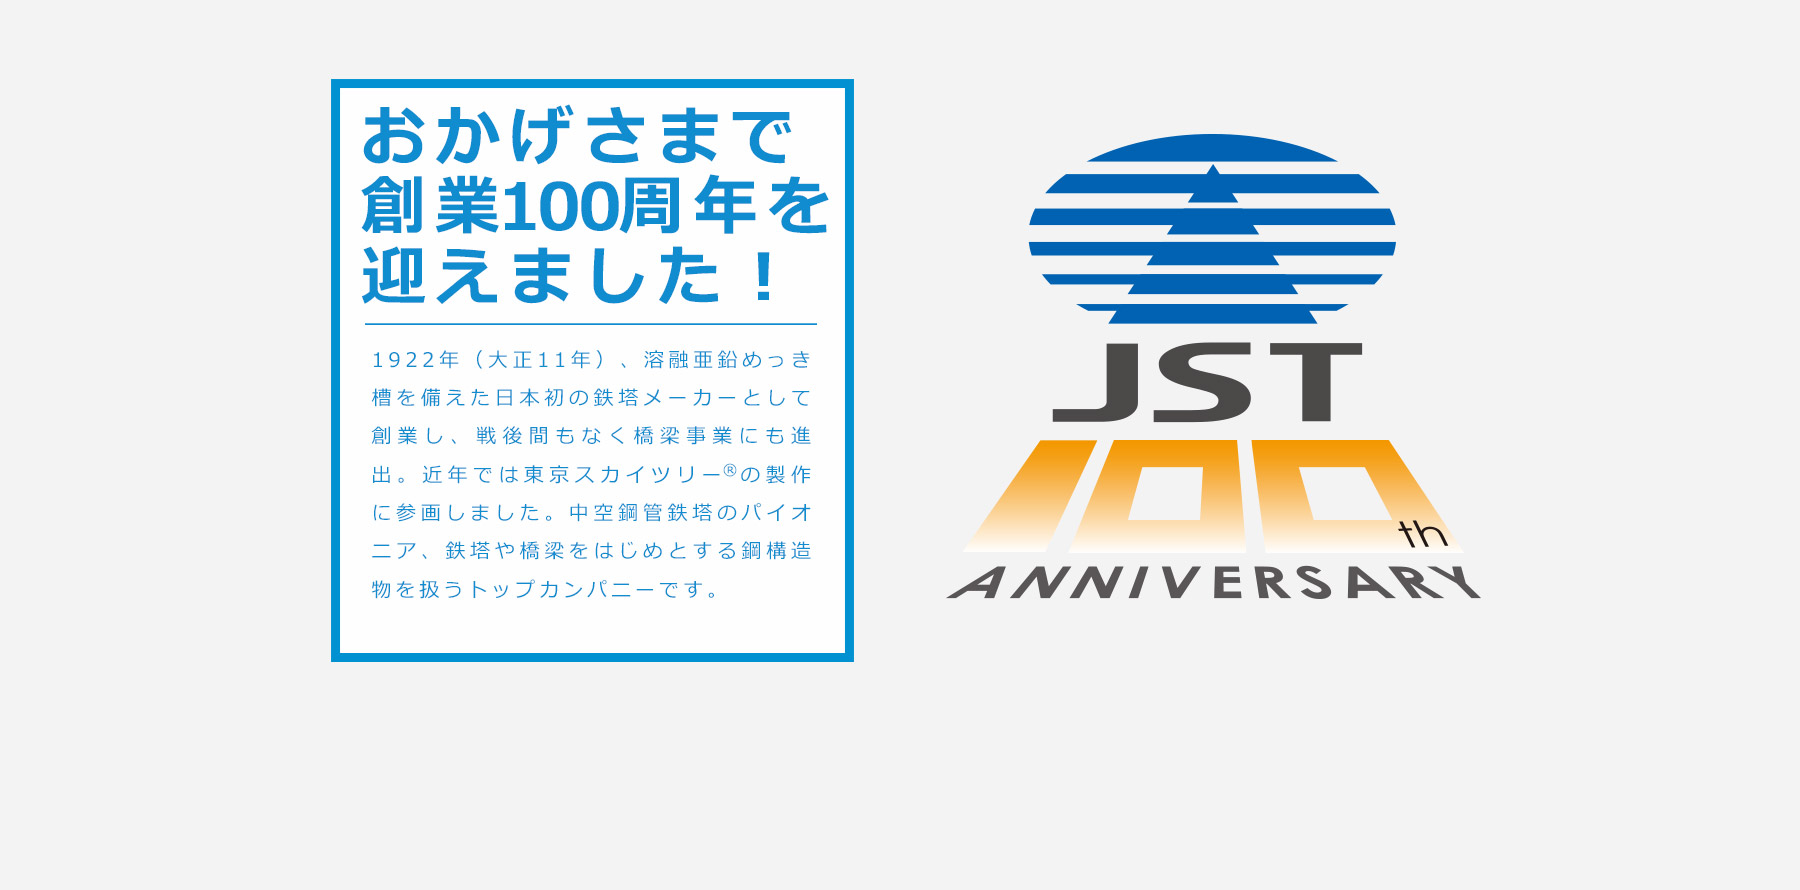 日本鉄塔工業 もうすぐ100年、そして、これからの100年へ